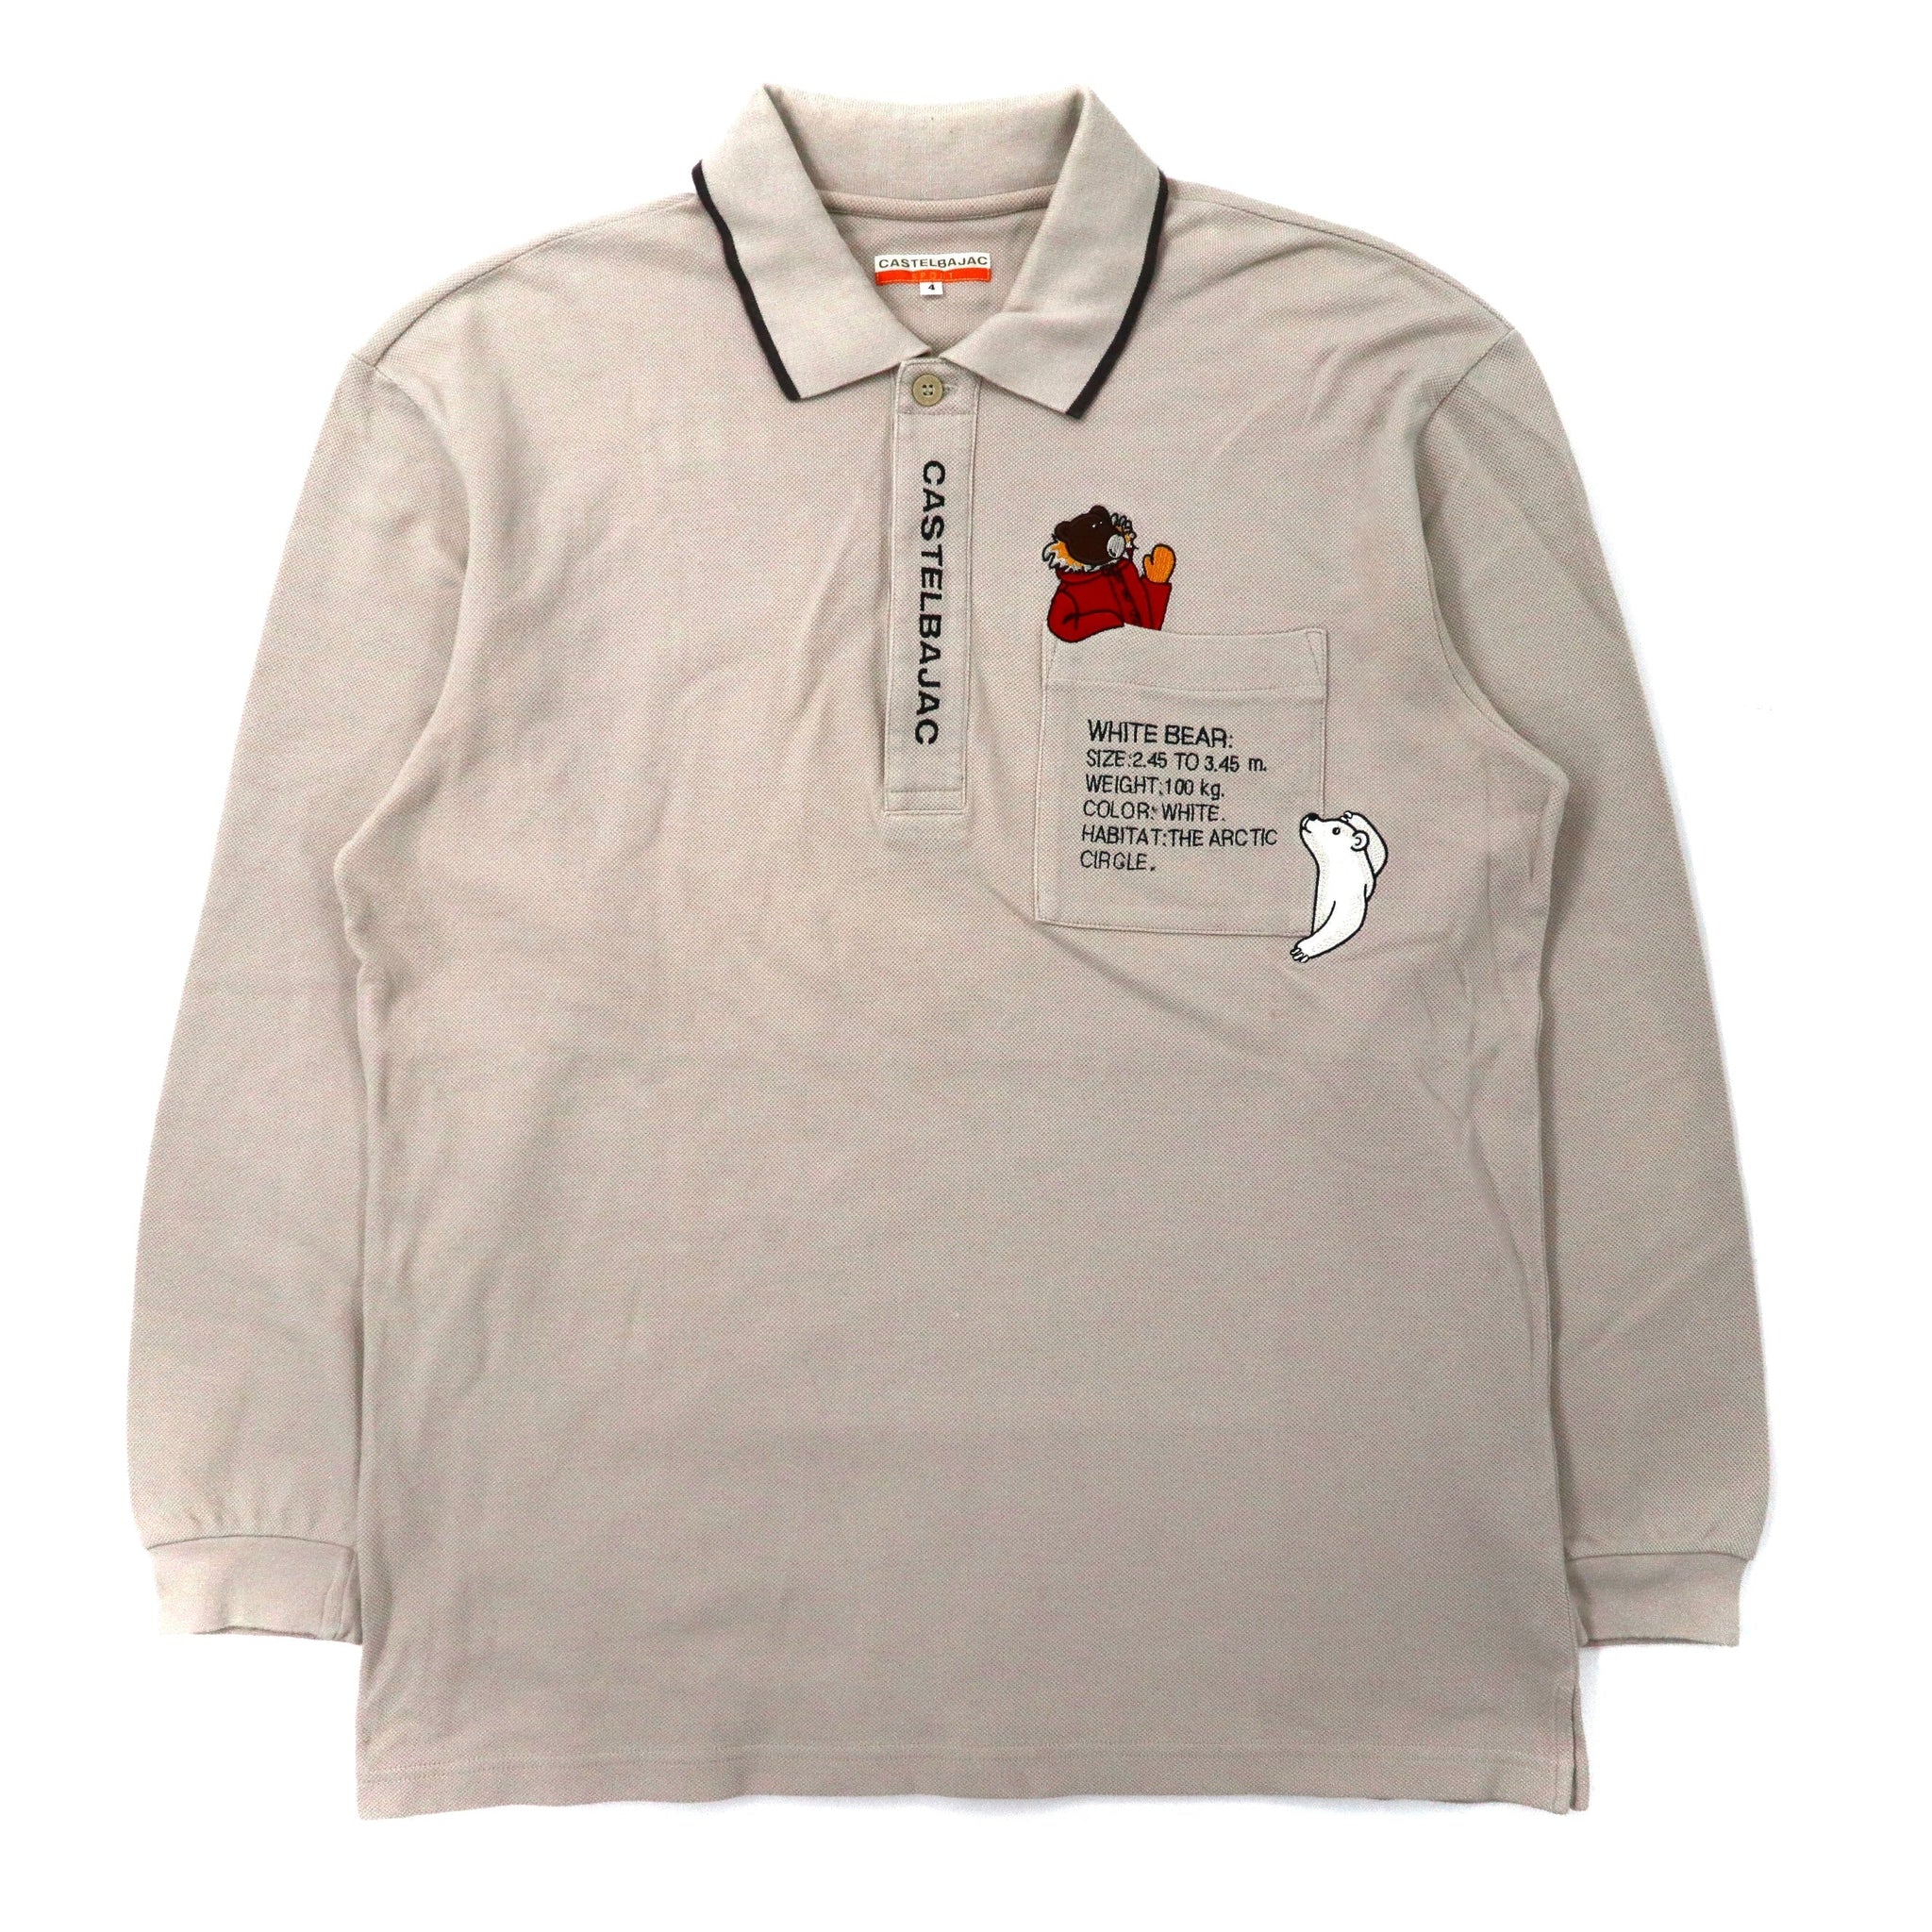 CASTELBAJAC SPORT ビッグサイズ長袖ポロシャツ 4 ベージュ コットン キャラクター刺繍 90年代